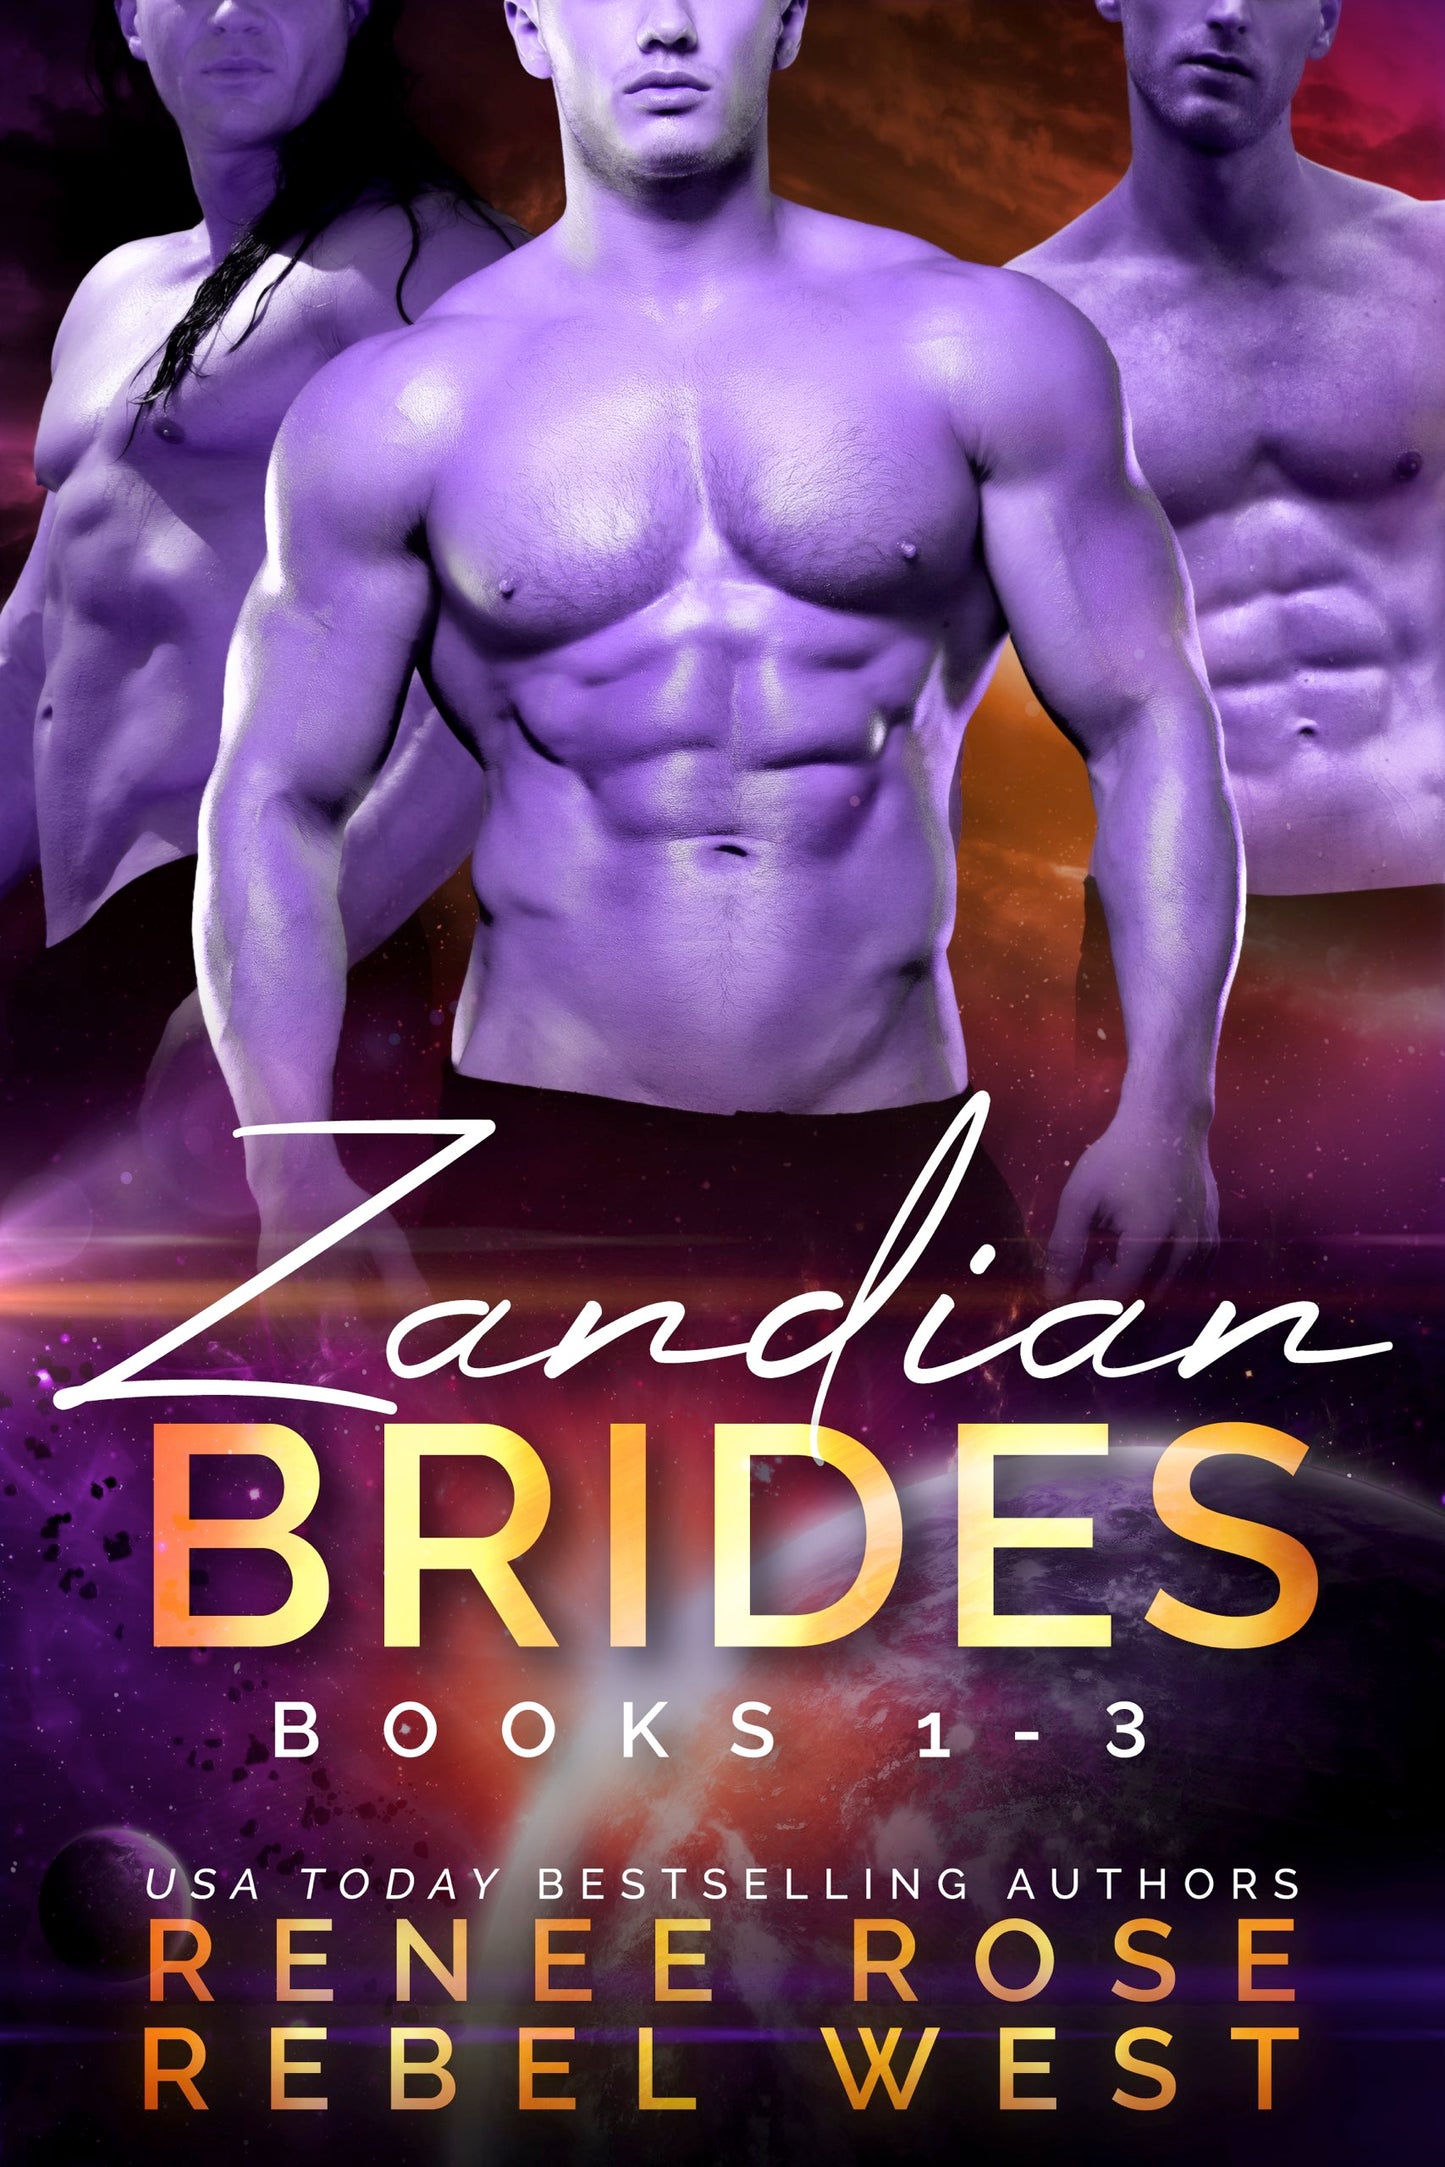 Zandian Brides Set: E-Books 1-3